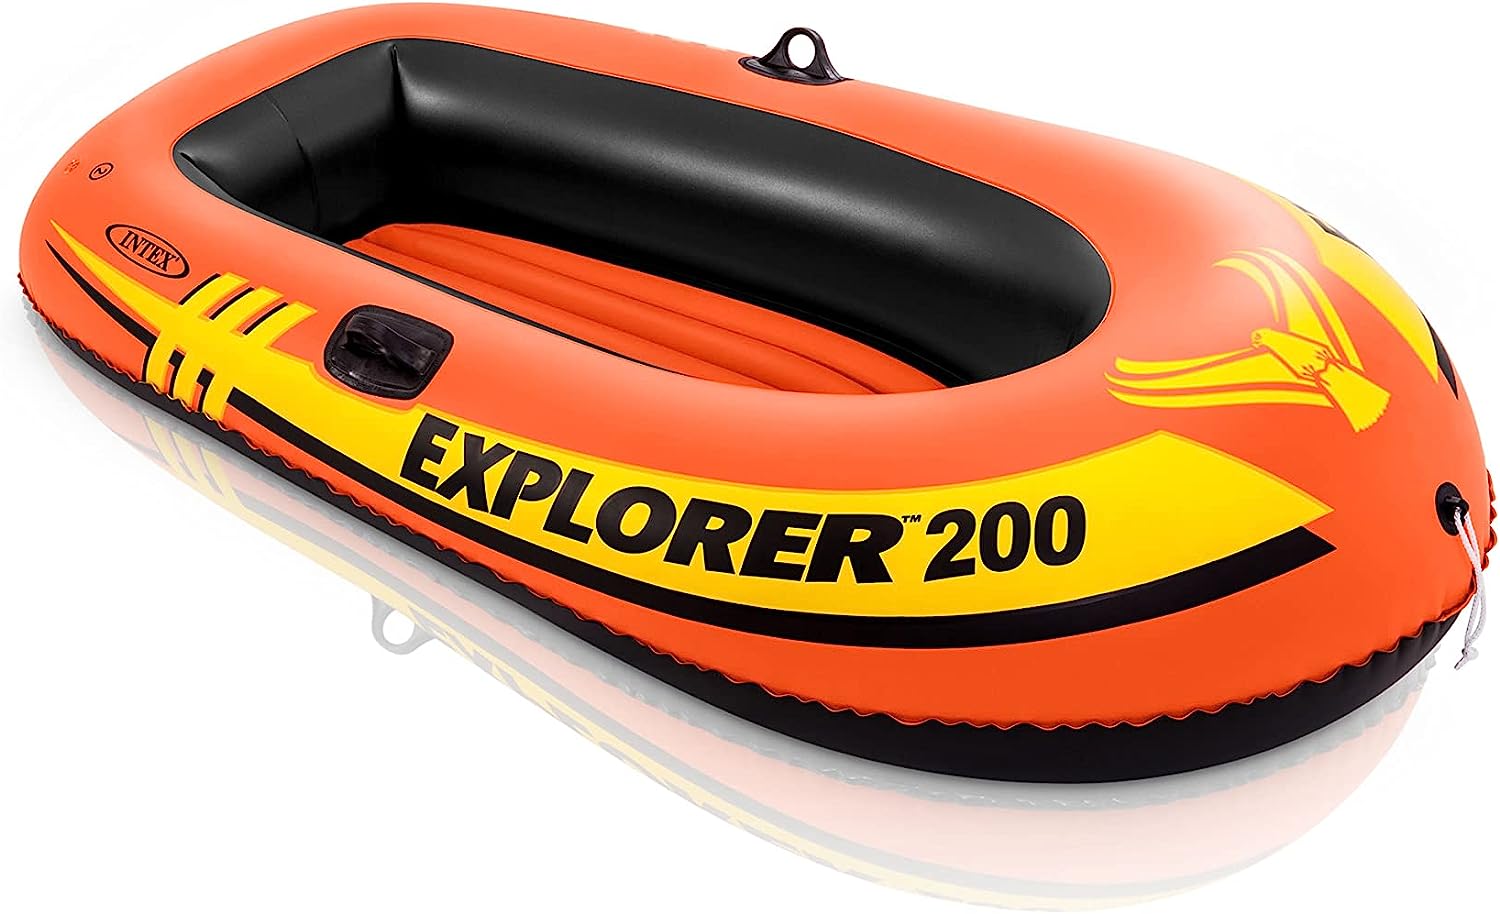 Intex Explorer Inflatable Boat